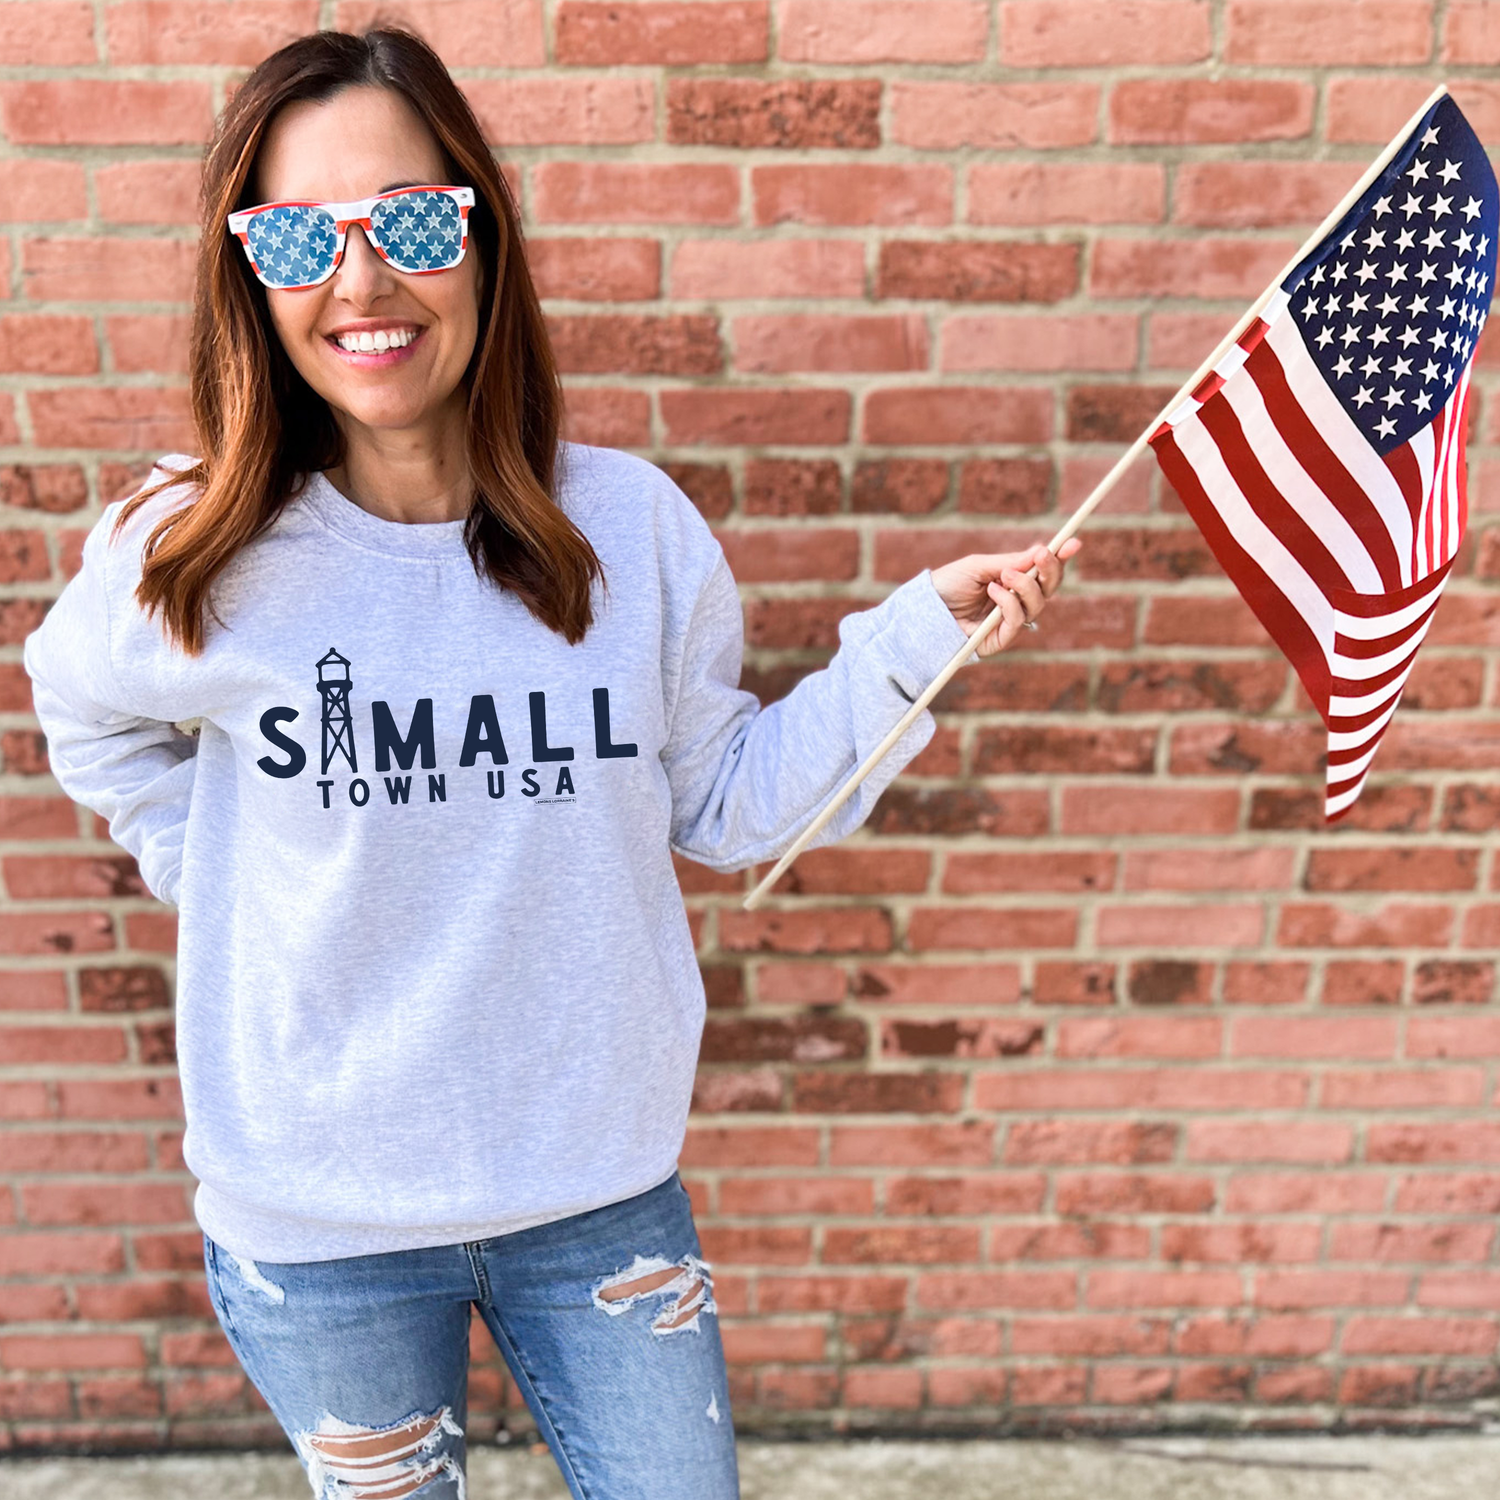 SMALL TOWN USA - Crewneck Sweatshirt